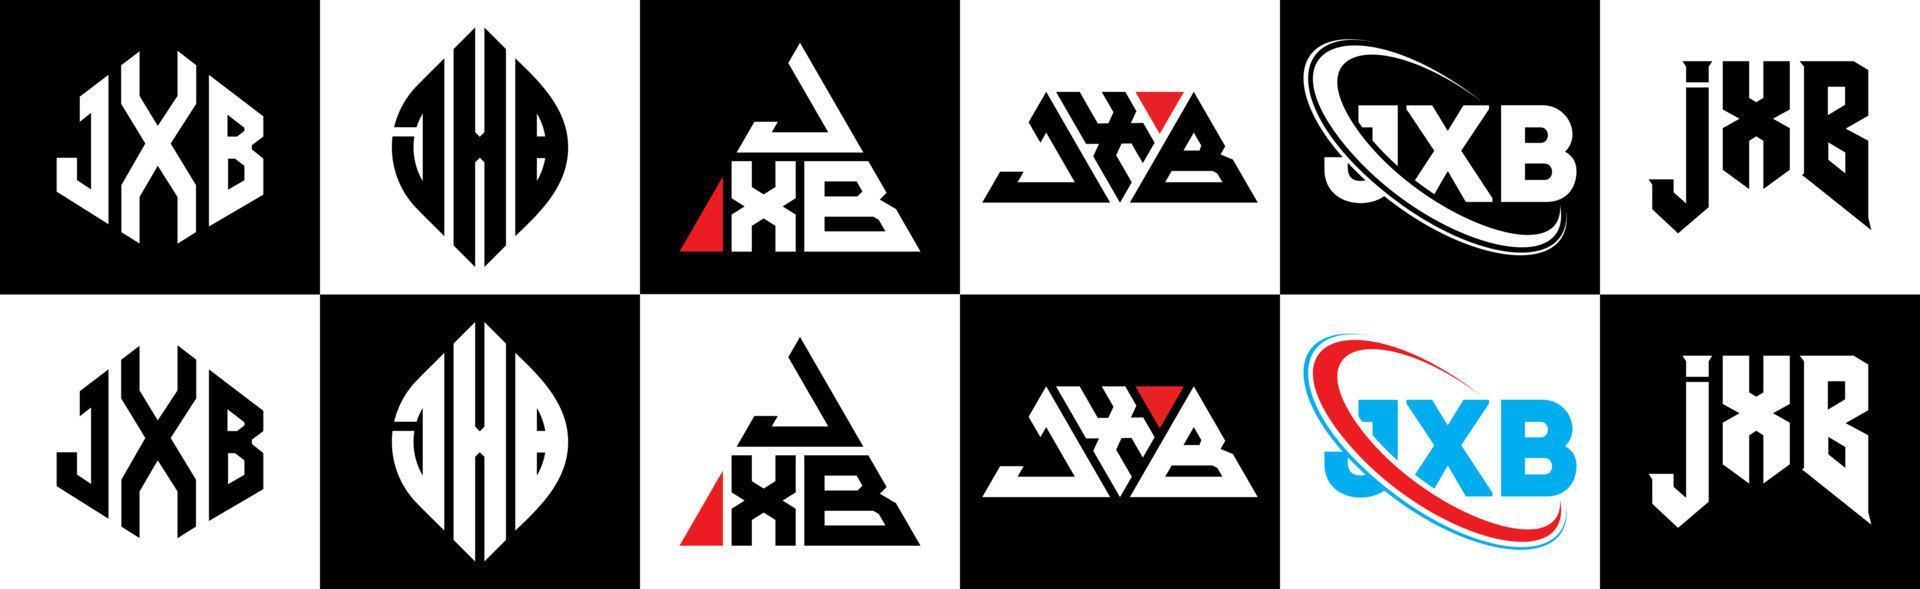 création de logo de lettre jxb en six styles. jxb polygone, cercle, triangle, hexagone, style plat et simple avec logo de lettre de variation de couleur noir et blanc dans un plan de travail. jxb logo minimaliste et classique vecteur